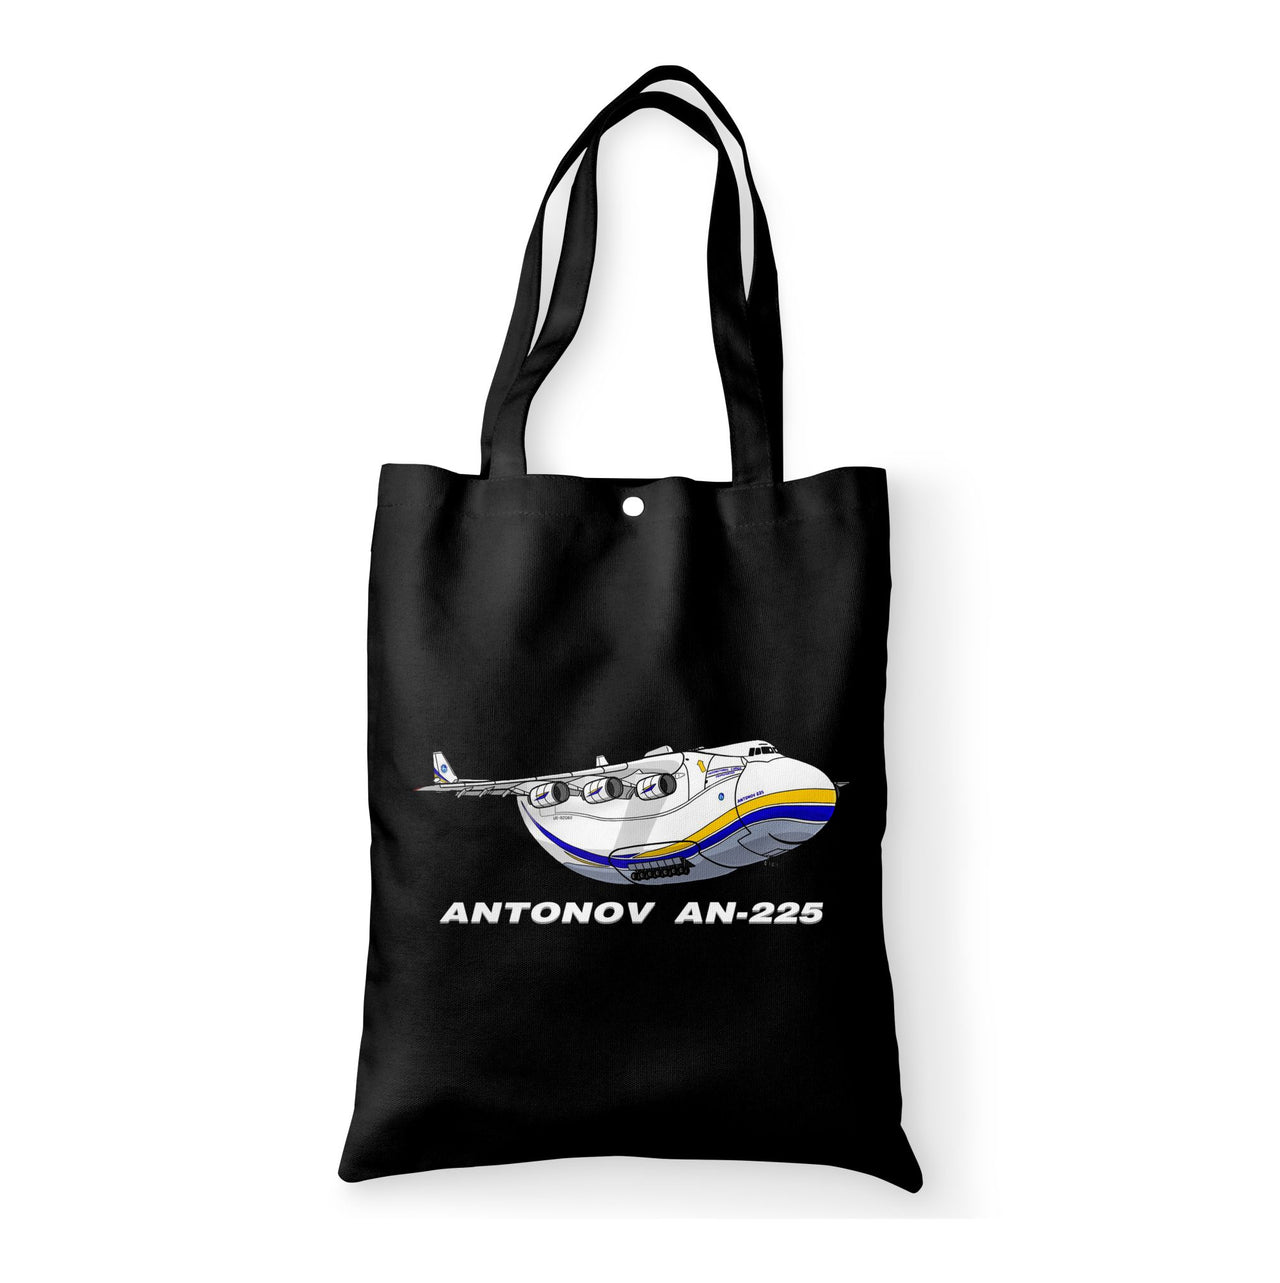 Antonov AN-225 (17) Designed Tote Bags